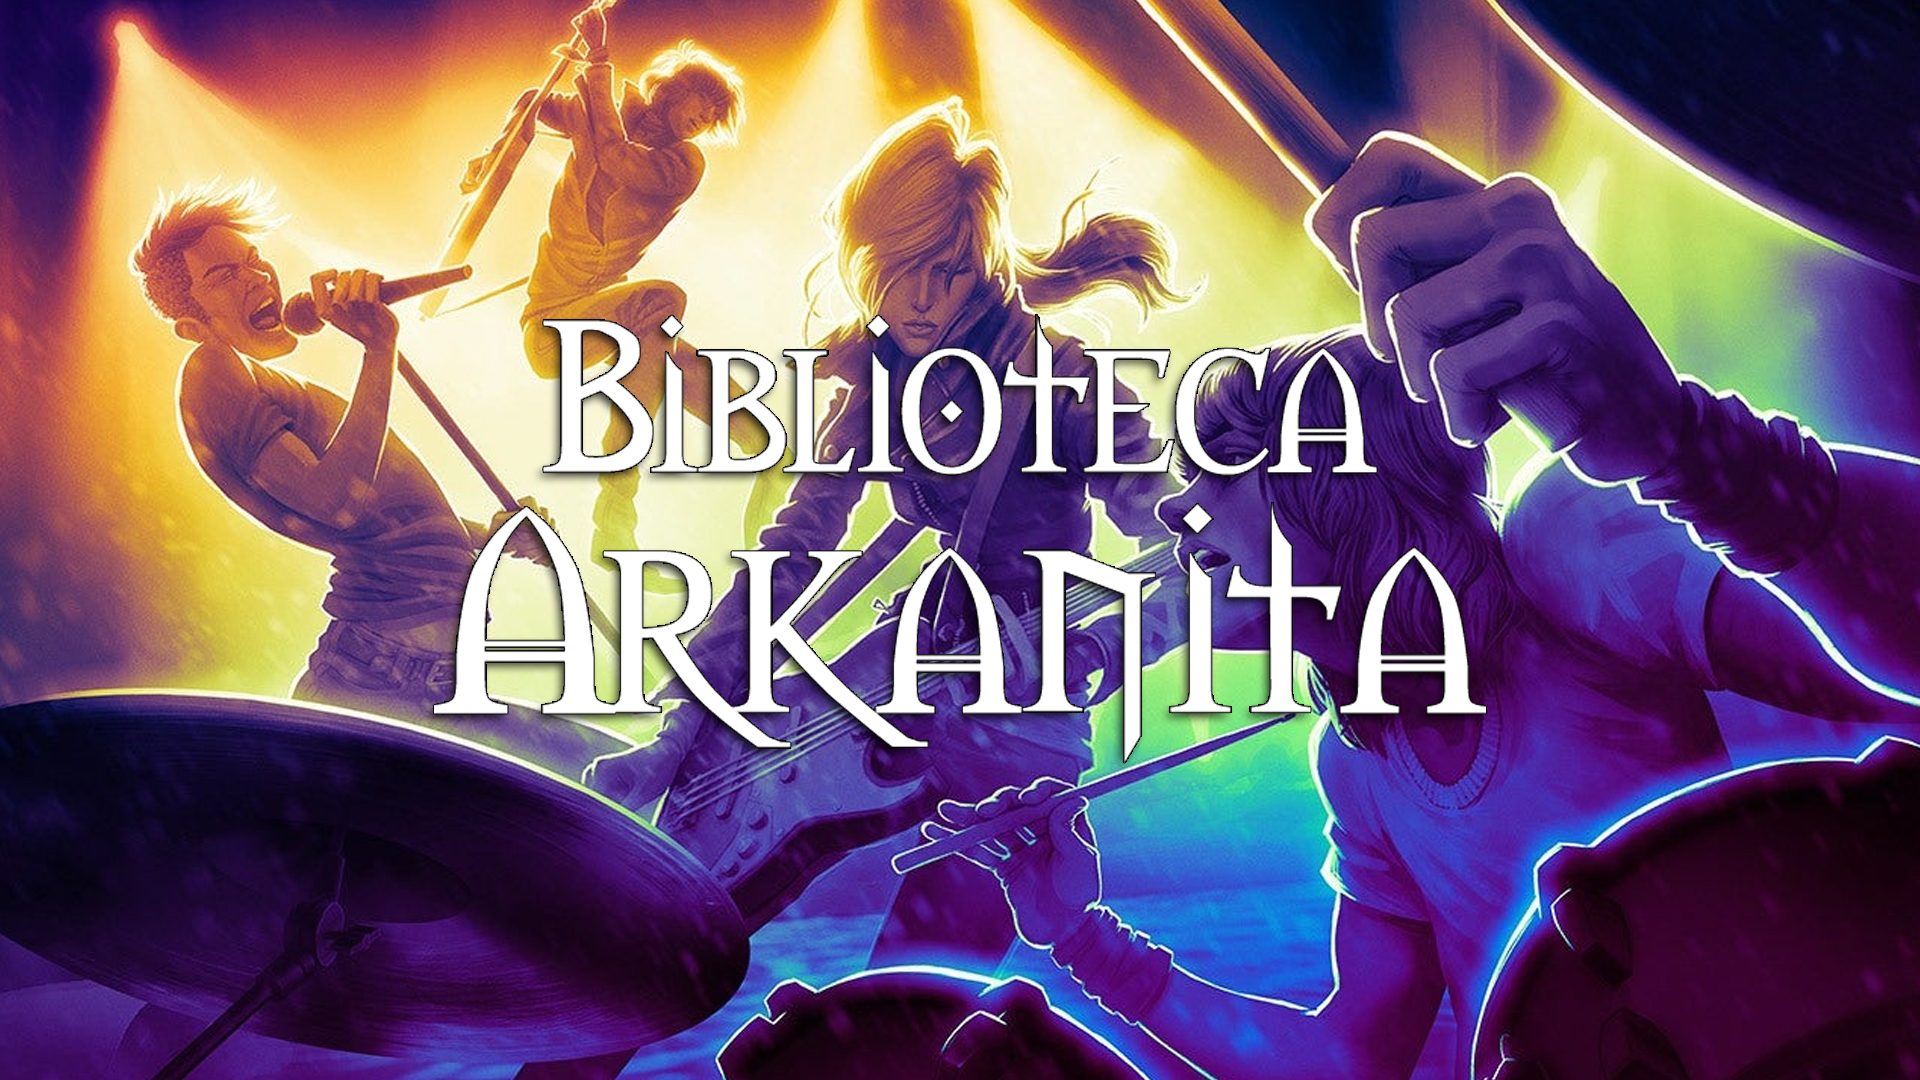 Rock and Roll – Biblioteca Arkanita